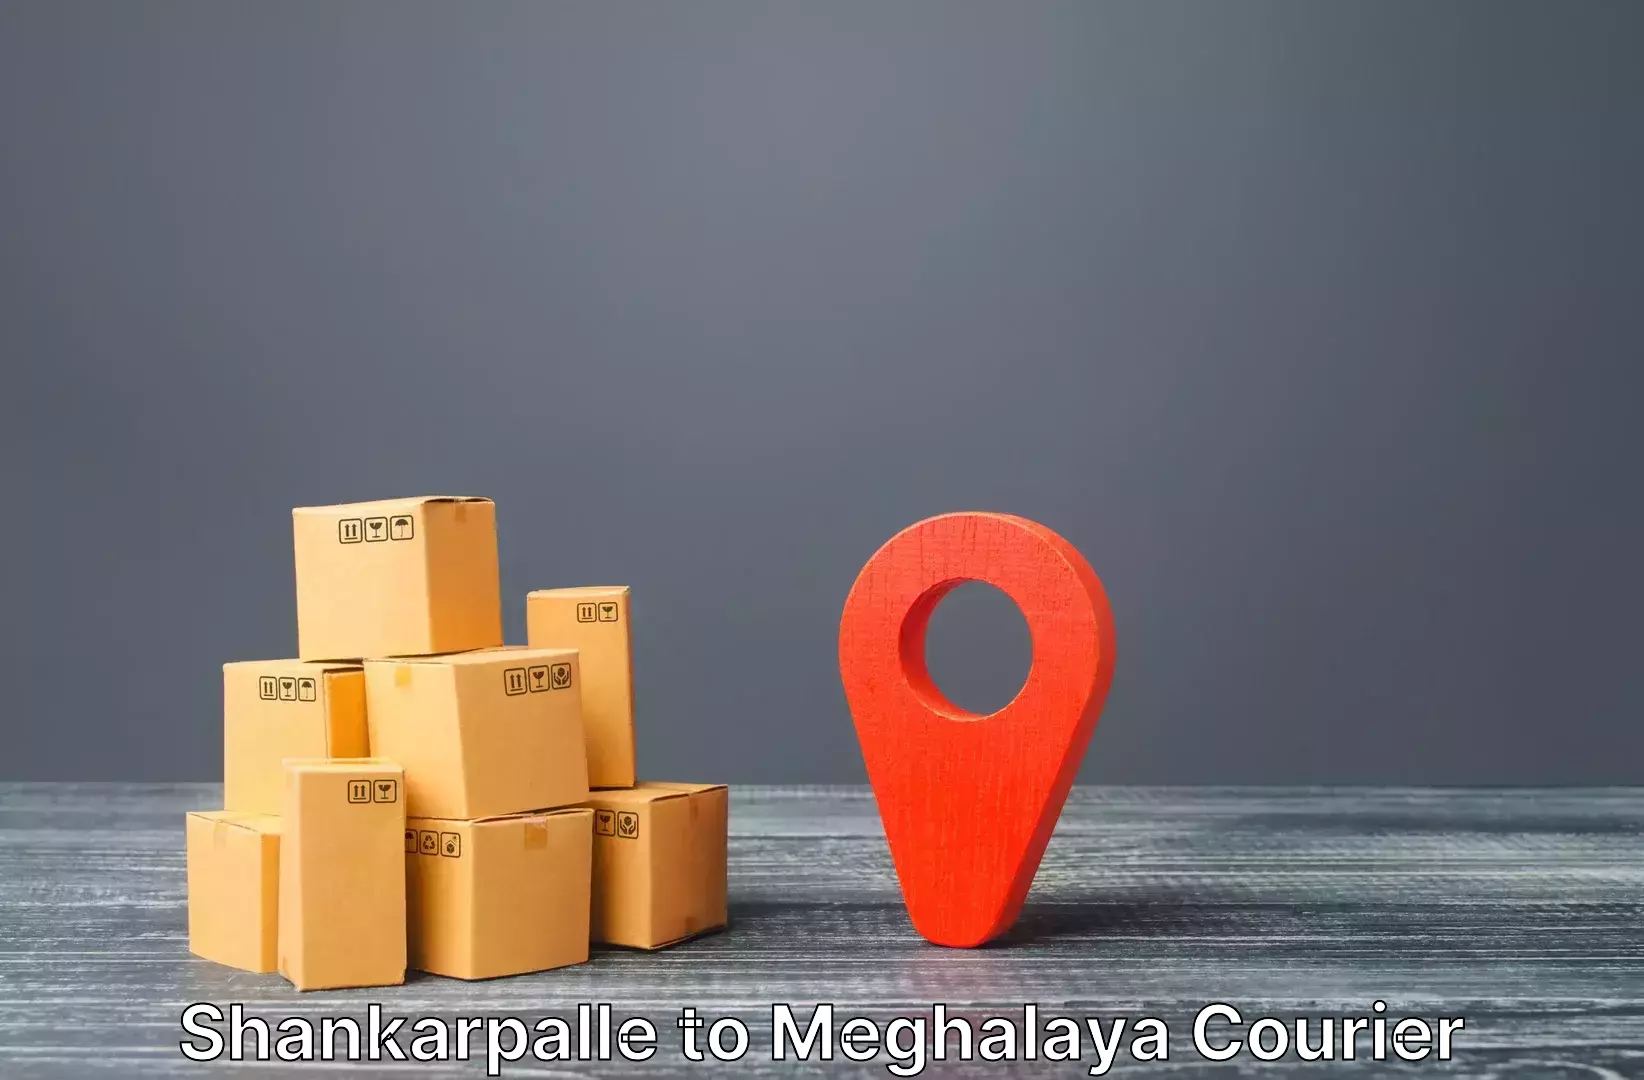 Baggage transport scheduler Shankarpalle to Meghalaya